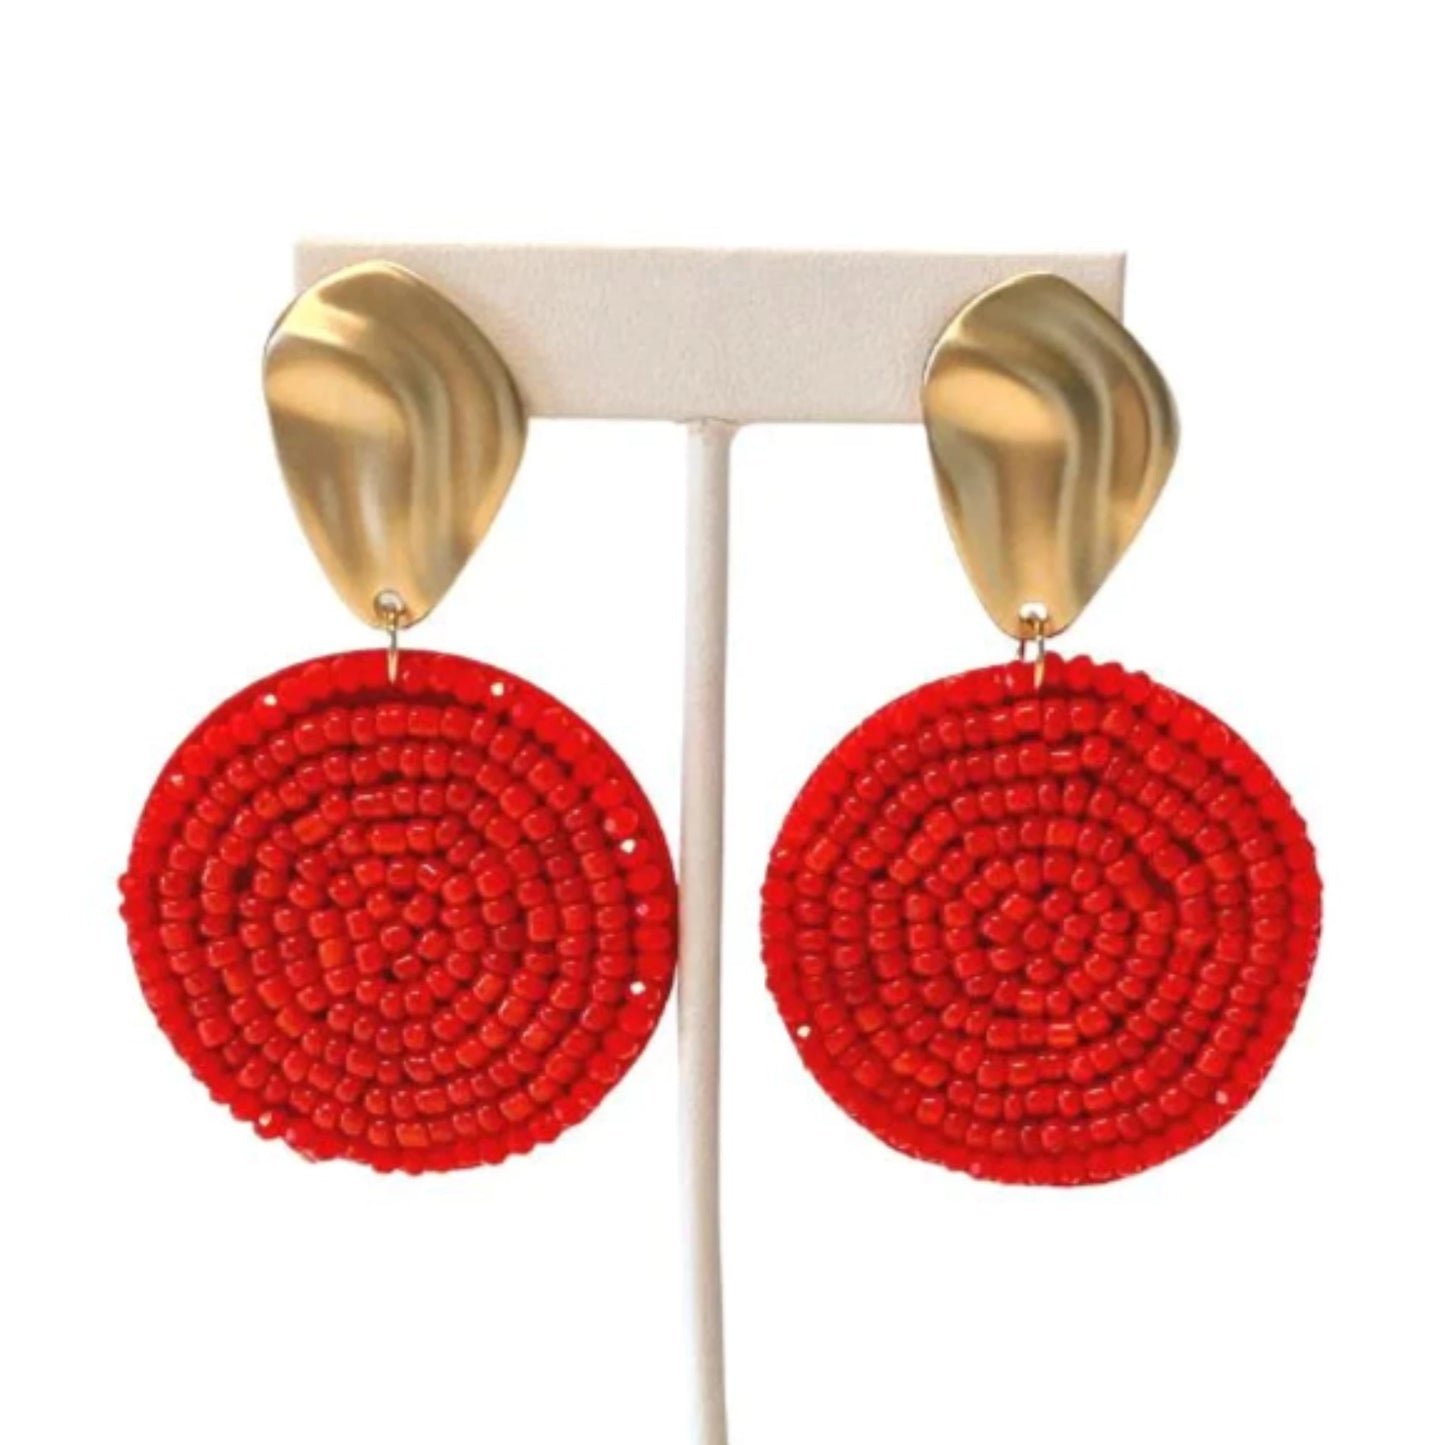 Red Layla Earrings by Millie B.